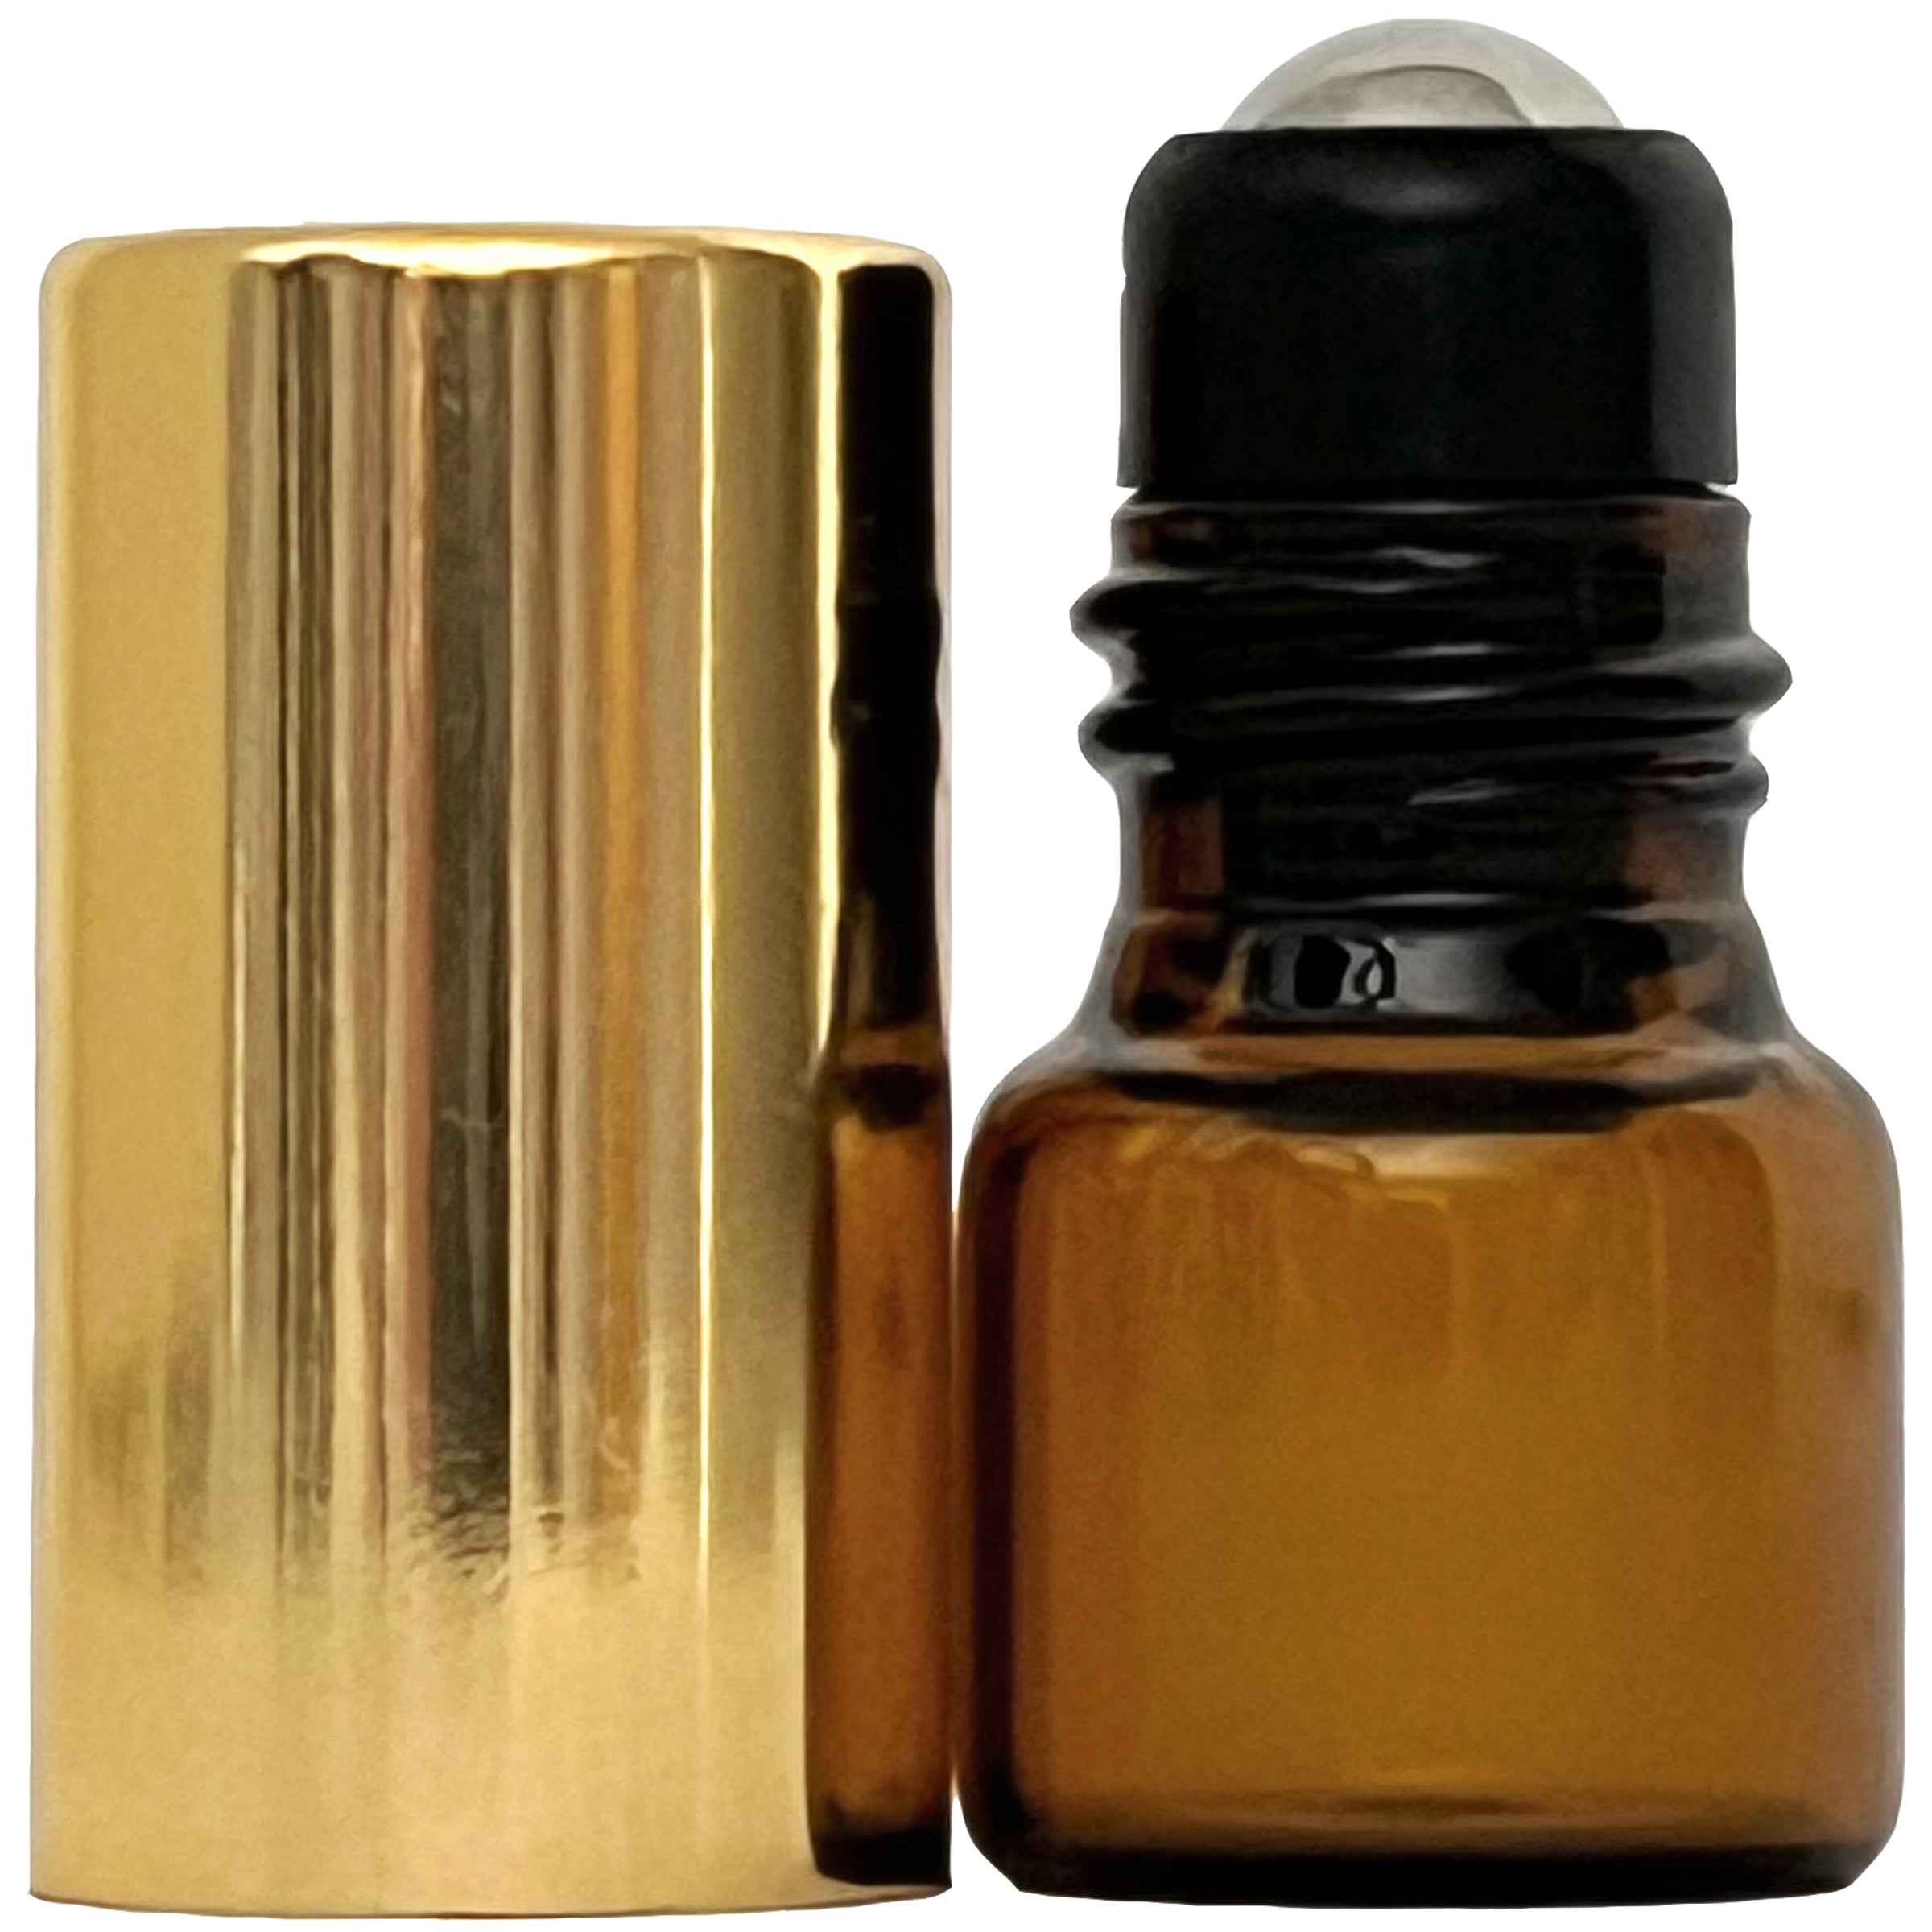 1ml 0.03oz Amber Glass Roll On Roller Bottles Gold Caps